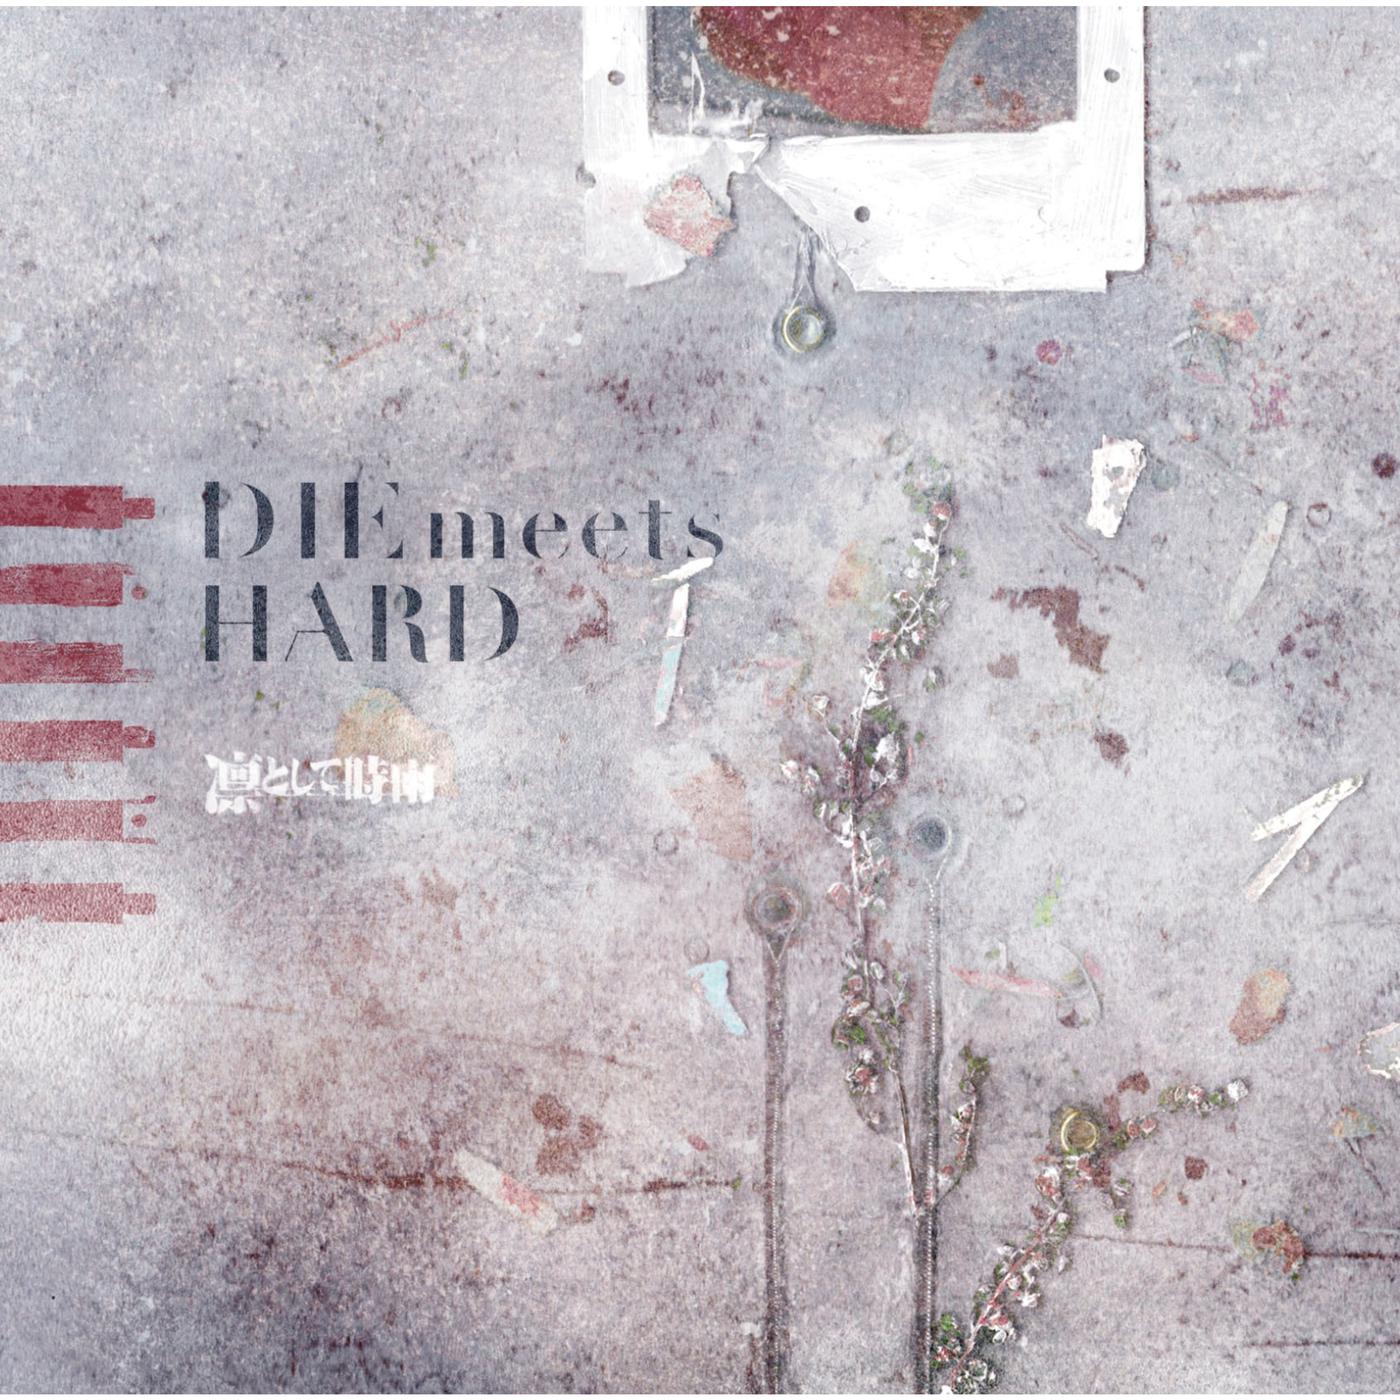 Die Meets Hard歌词 歌手凛として時雨-专辑DIE meets HARD-单曲《Die Meets Hard》LRC歌词下载